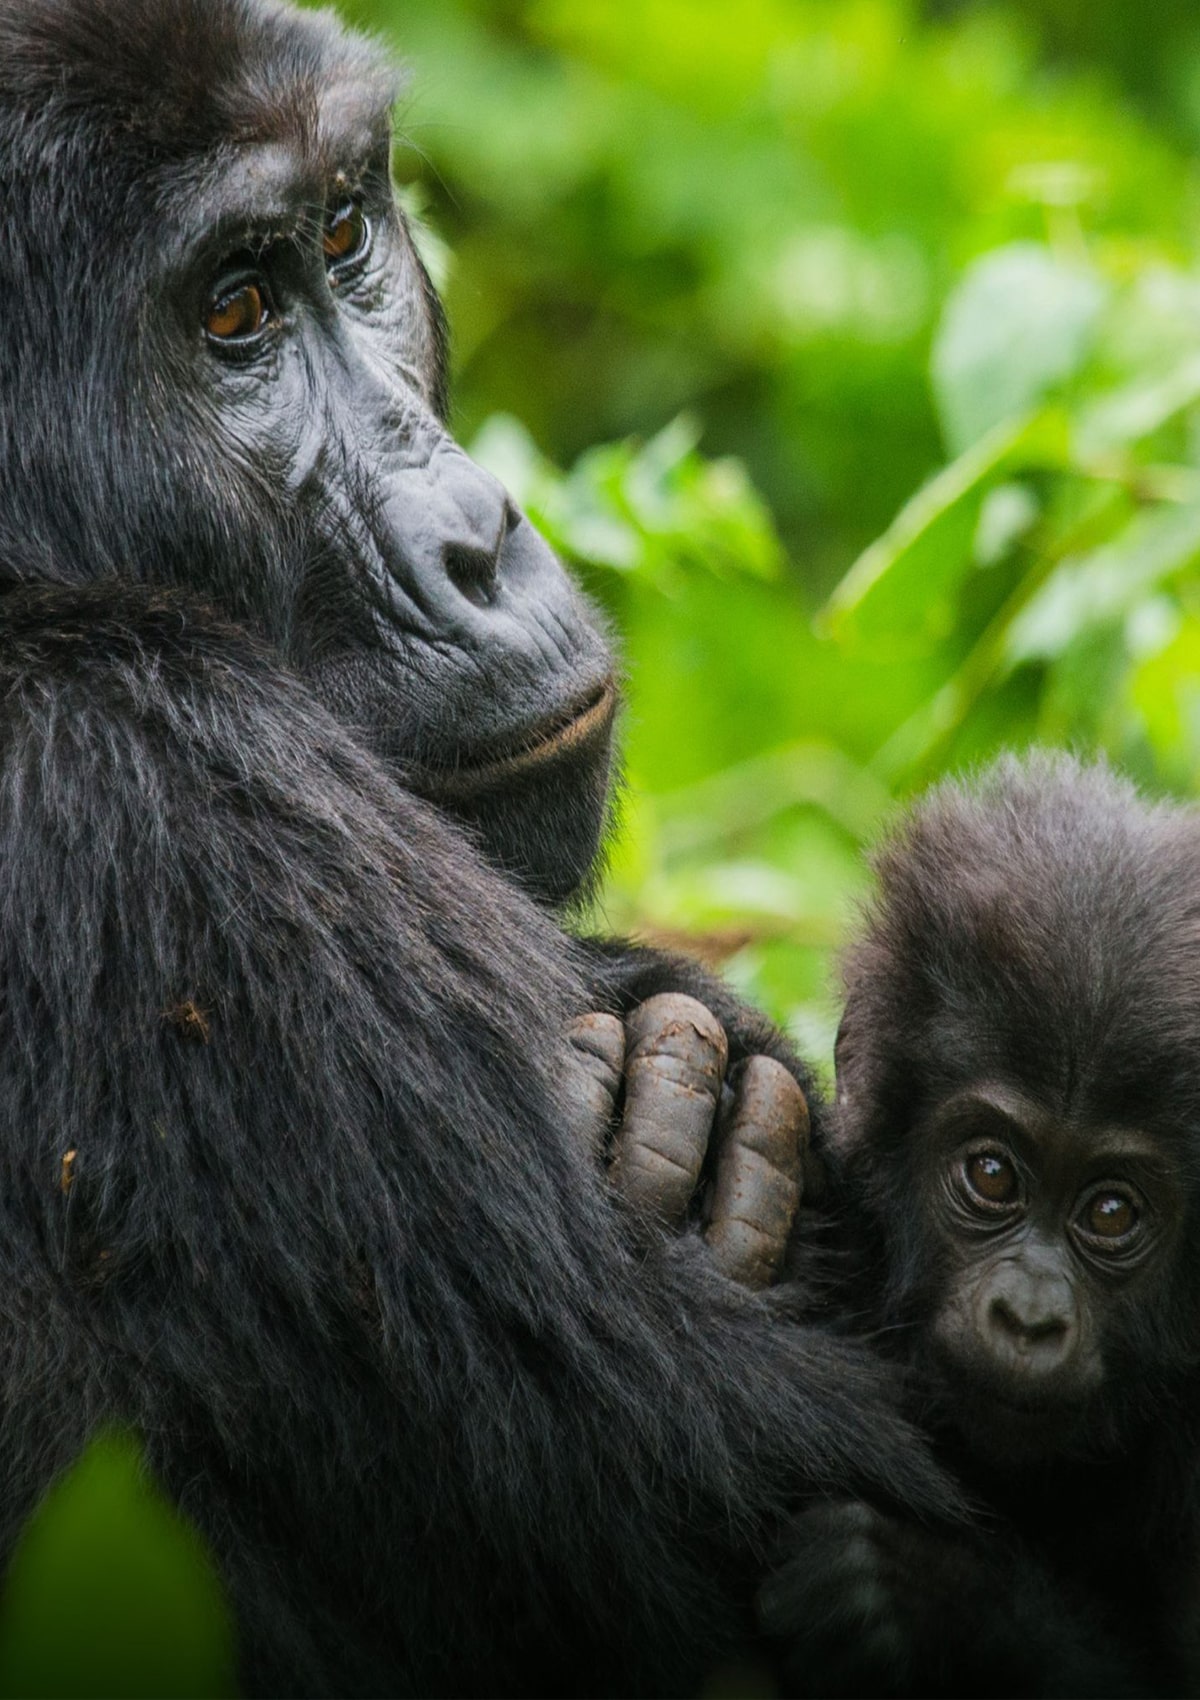 Trekking Gorilla in Uganda